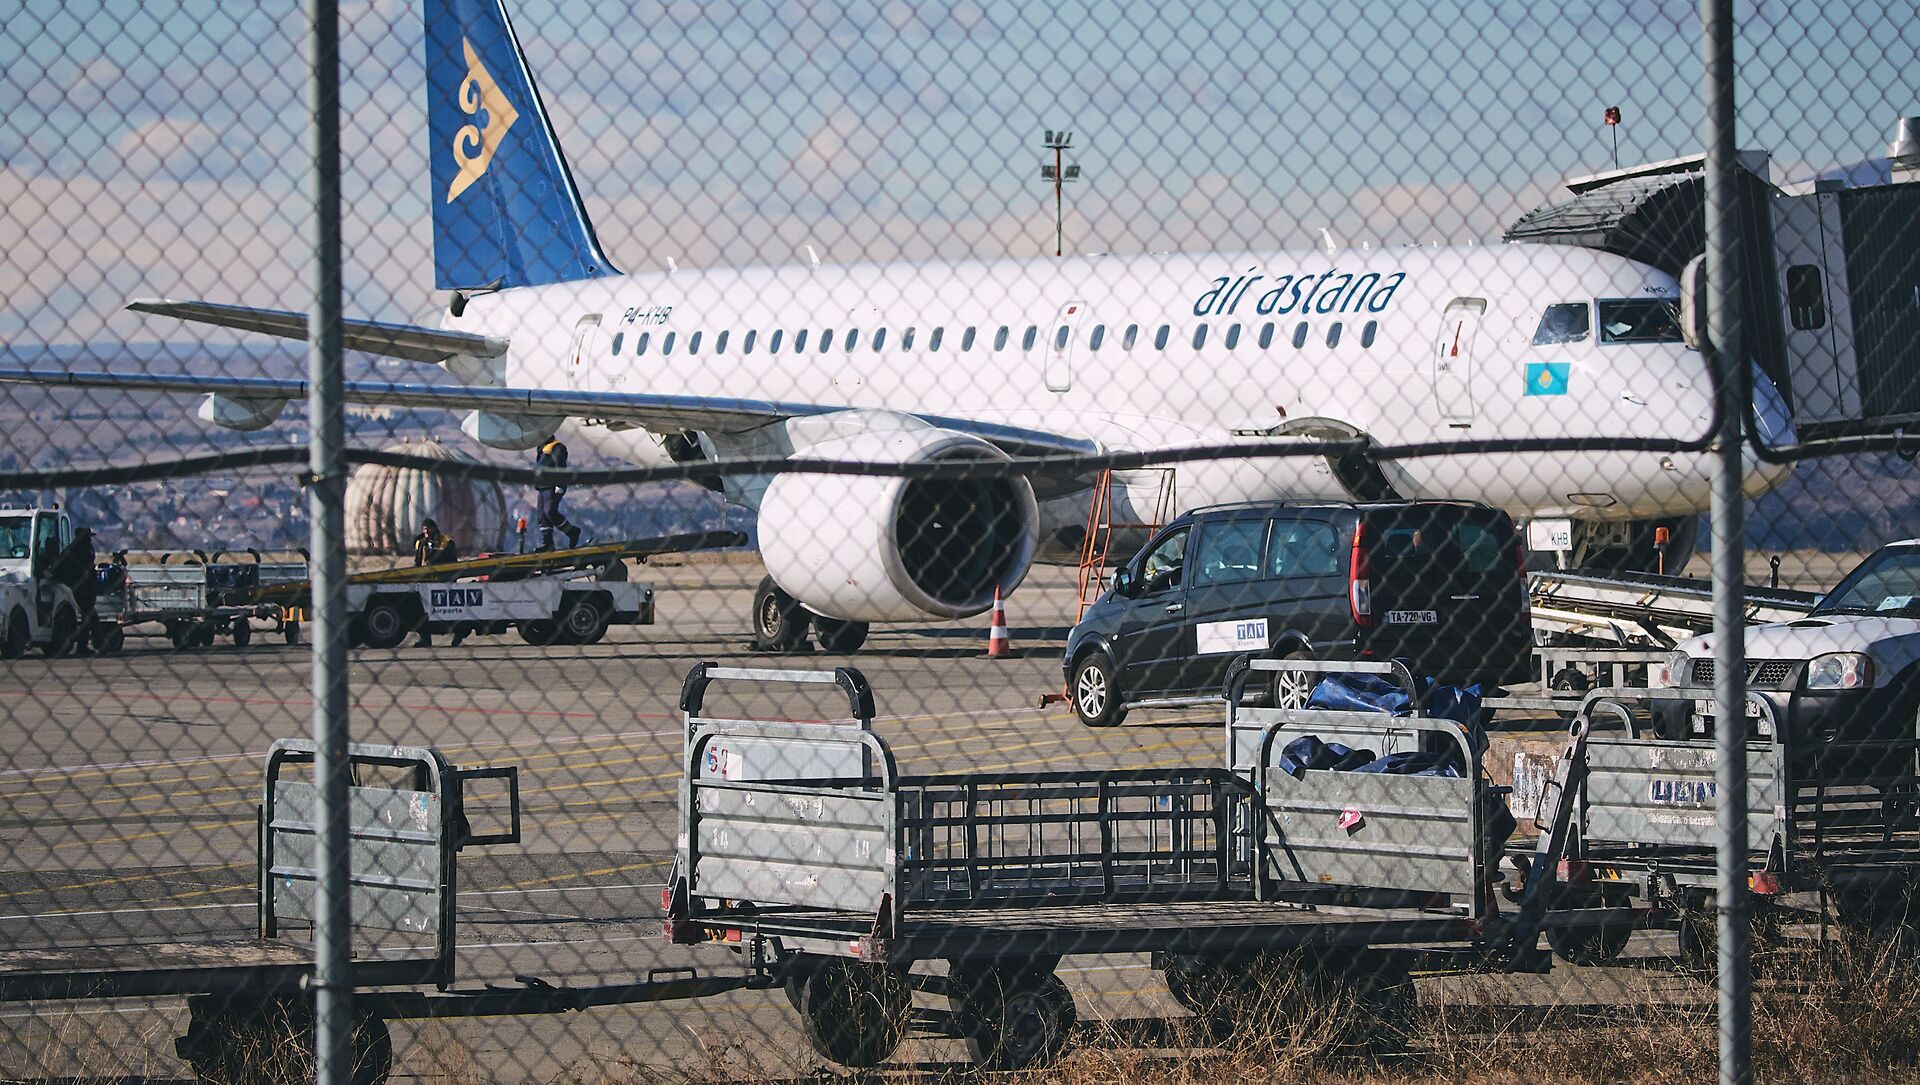 Самолет казахстанской авиакомпании Air Astana в тбилисском аэропорту - Sputnik Грузия, 1920, 16.04.2021